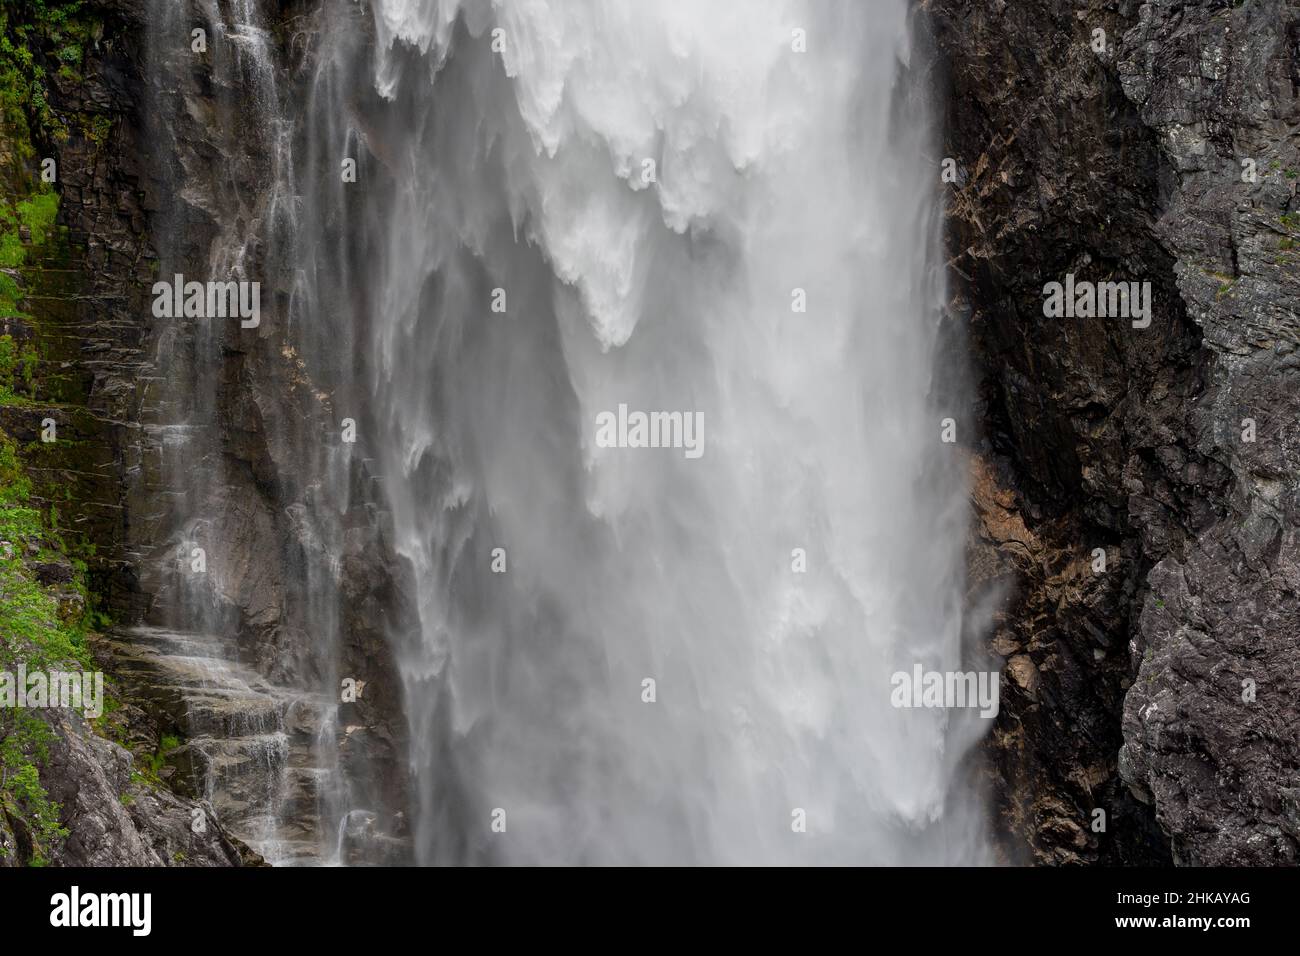 TAFJORD, NORVÈGE - 2020 JUIN 23.La cascade de Muldalfossen est l'une des plus grandes chutes d'eau de Norvège avec près de 200 mètres de chute libre. Banque D'Images